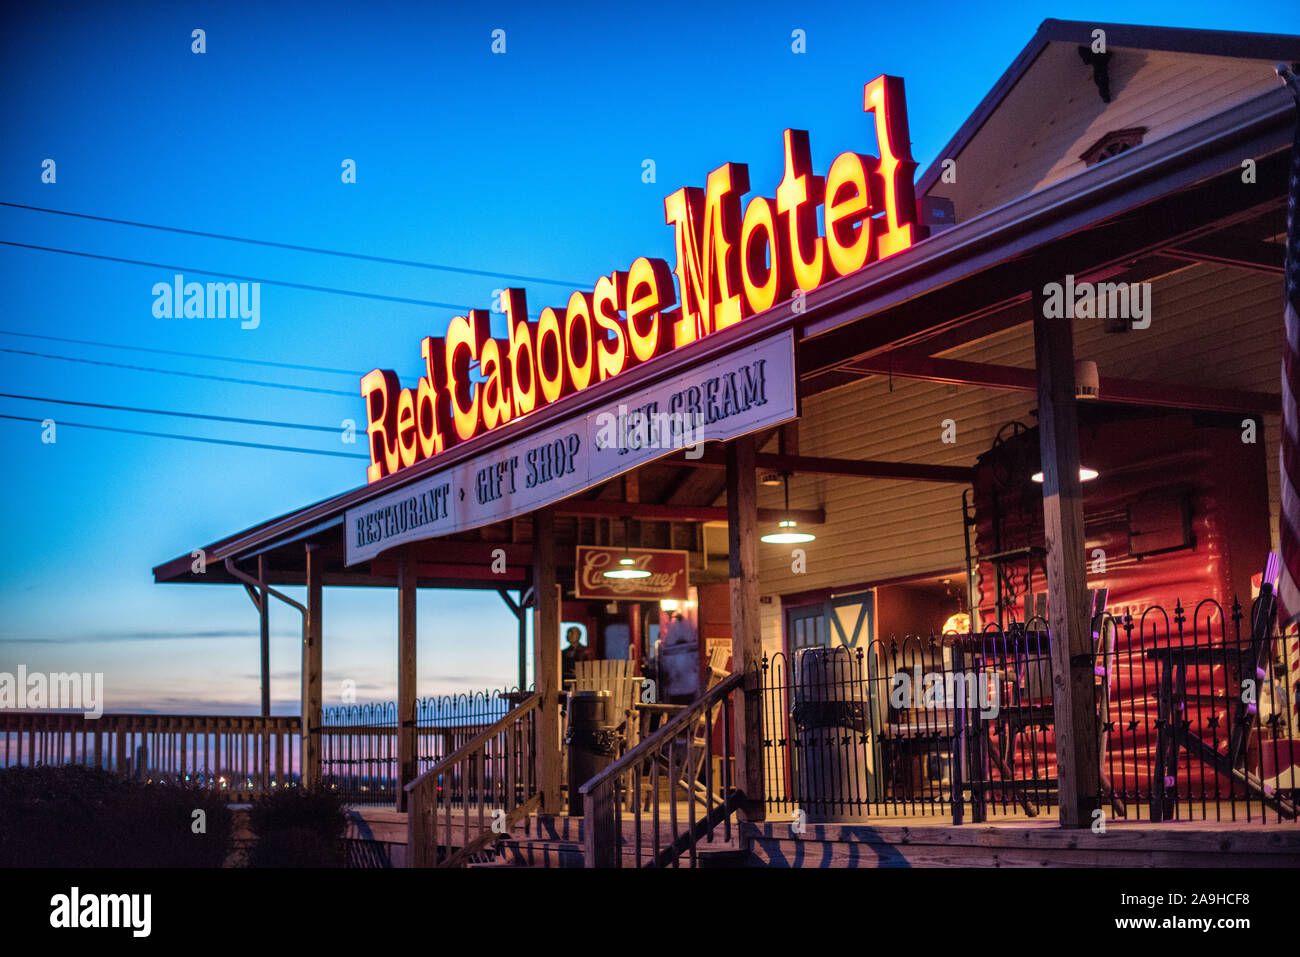 RONKS Pennsylvania - Red Caboose Motel, vicino Lancastter, PA, è una stazione ferroviaria motel a tema e ristorante. Non è distante da altri di tema ferroviario attrazioni e musei nelle vicinanze. Le sistemazioni dell'hotel sono convertiti in vecchi vagoni ferroviari. Foto Stock